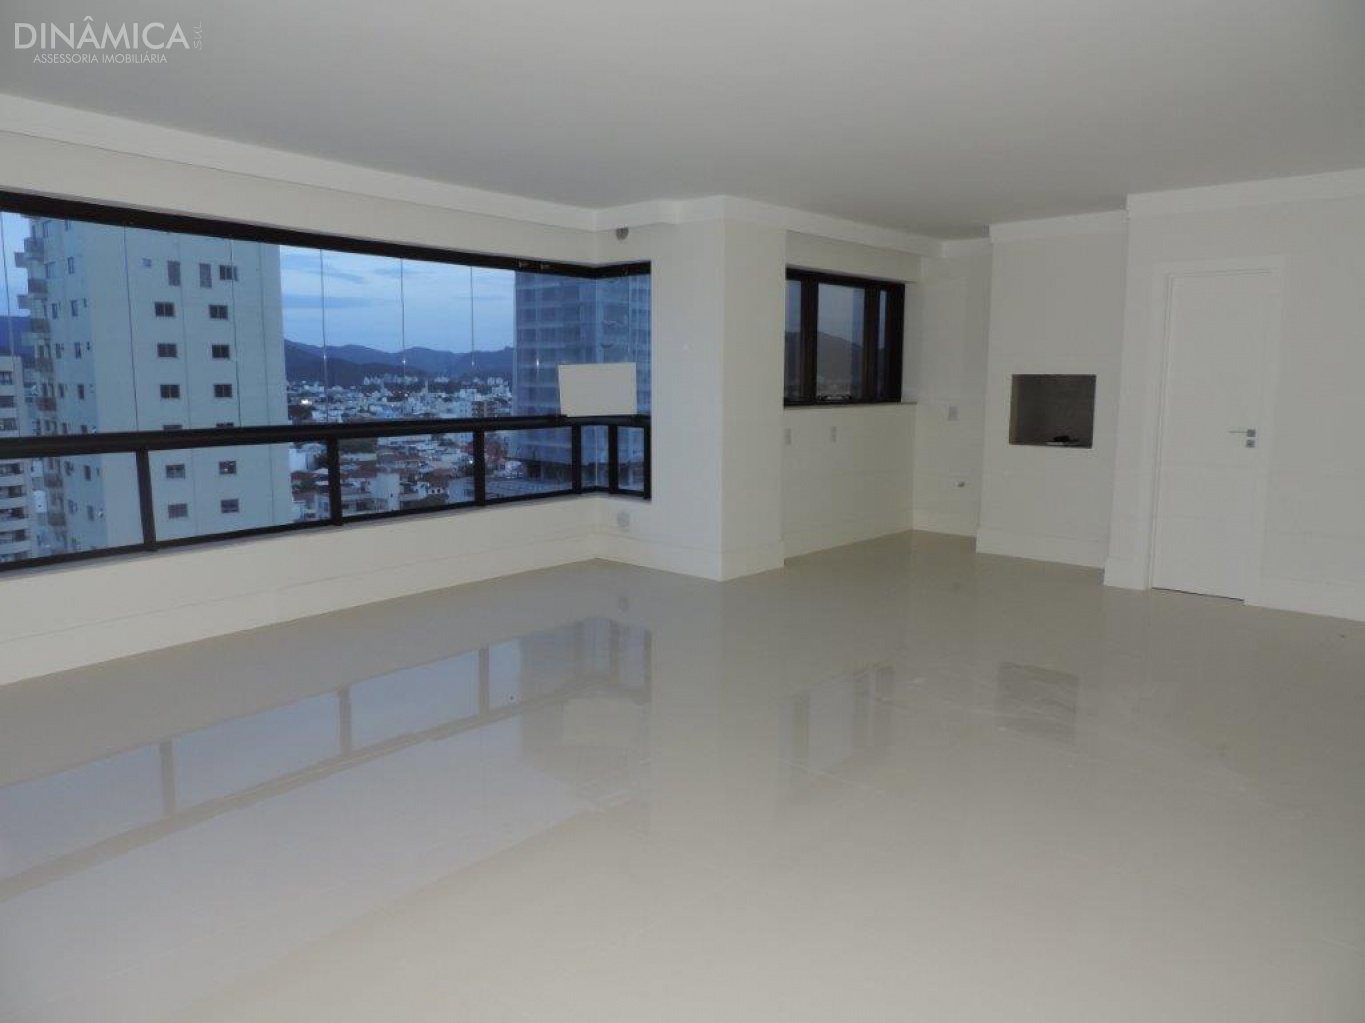 Apartamento no Edifício Residencial  Merithaman com 03 Dormitórios  em Balneário Camboriú no Bairro Centro, duas Vagas de Garagem